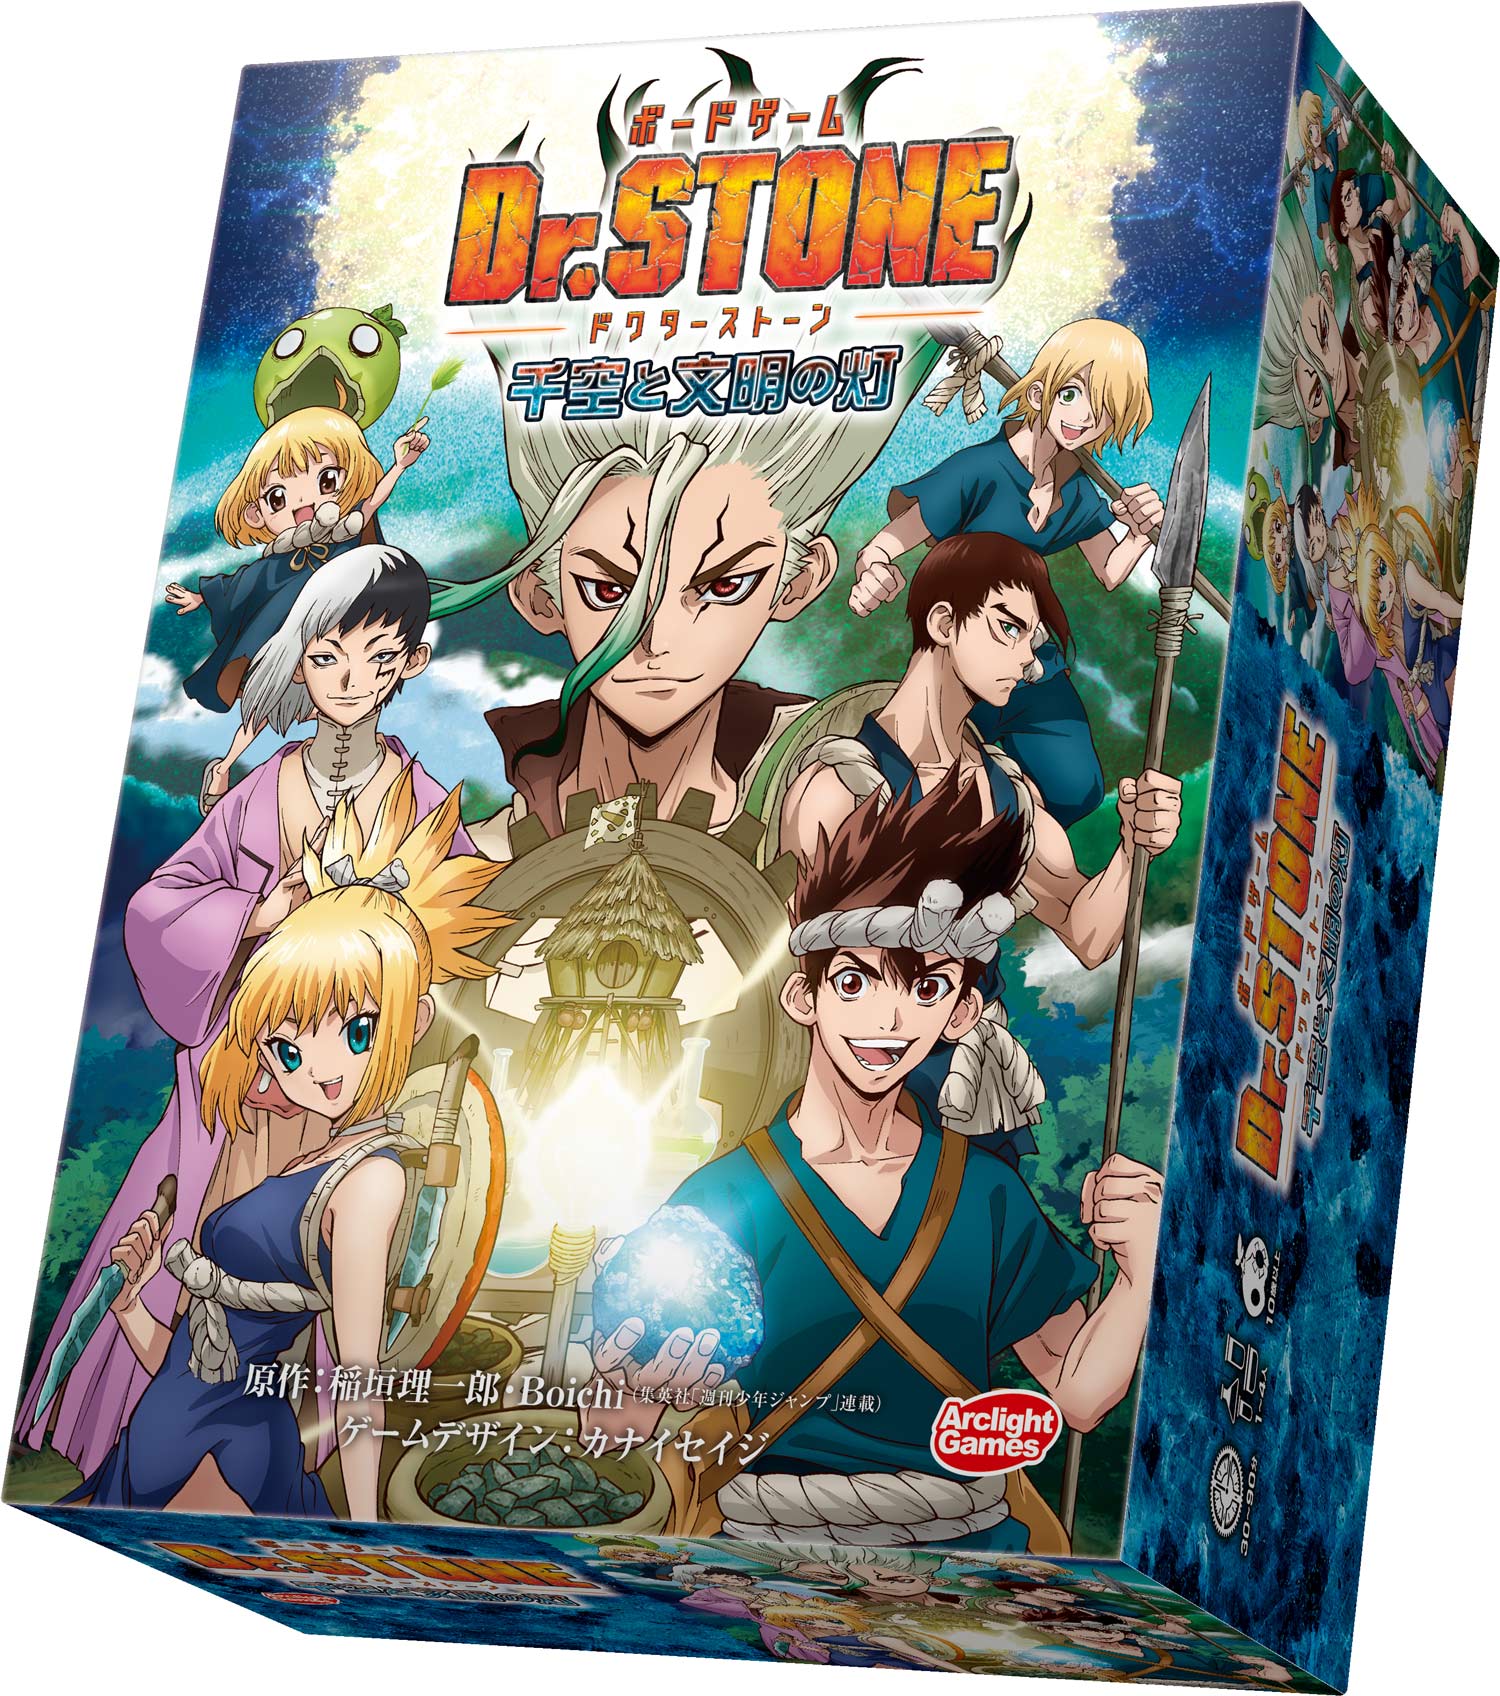 大人気tvアニメ Dr Stone がボードゲームに Dr Stone ボードゲーム 千空と文明の灯 発売決定 株式会社アークライトのプレスリリース